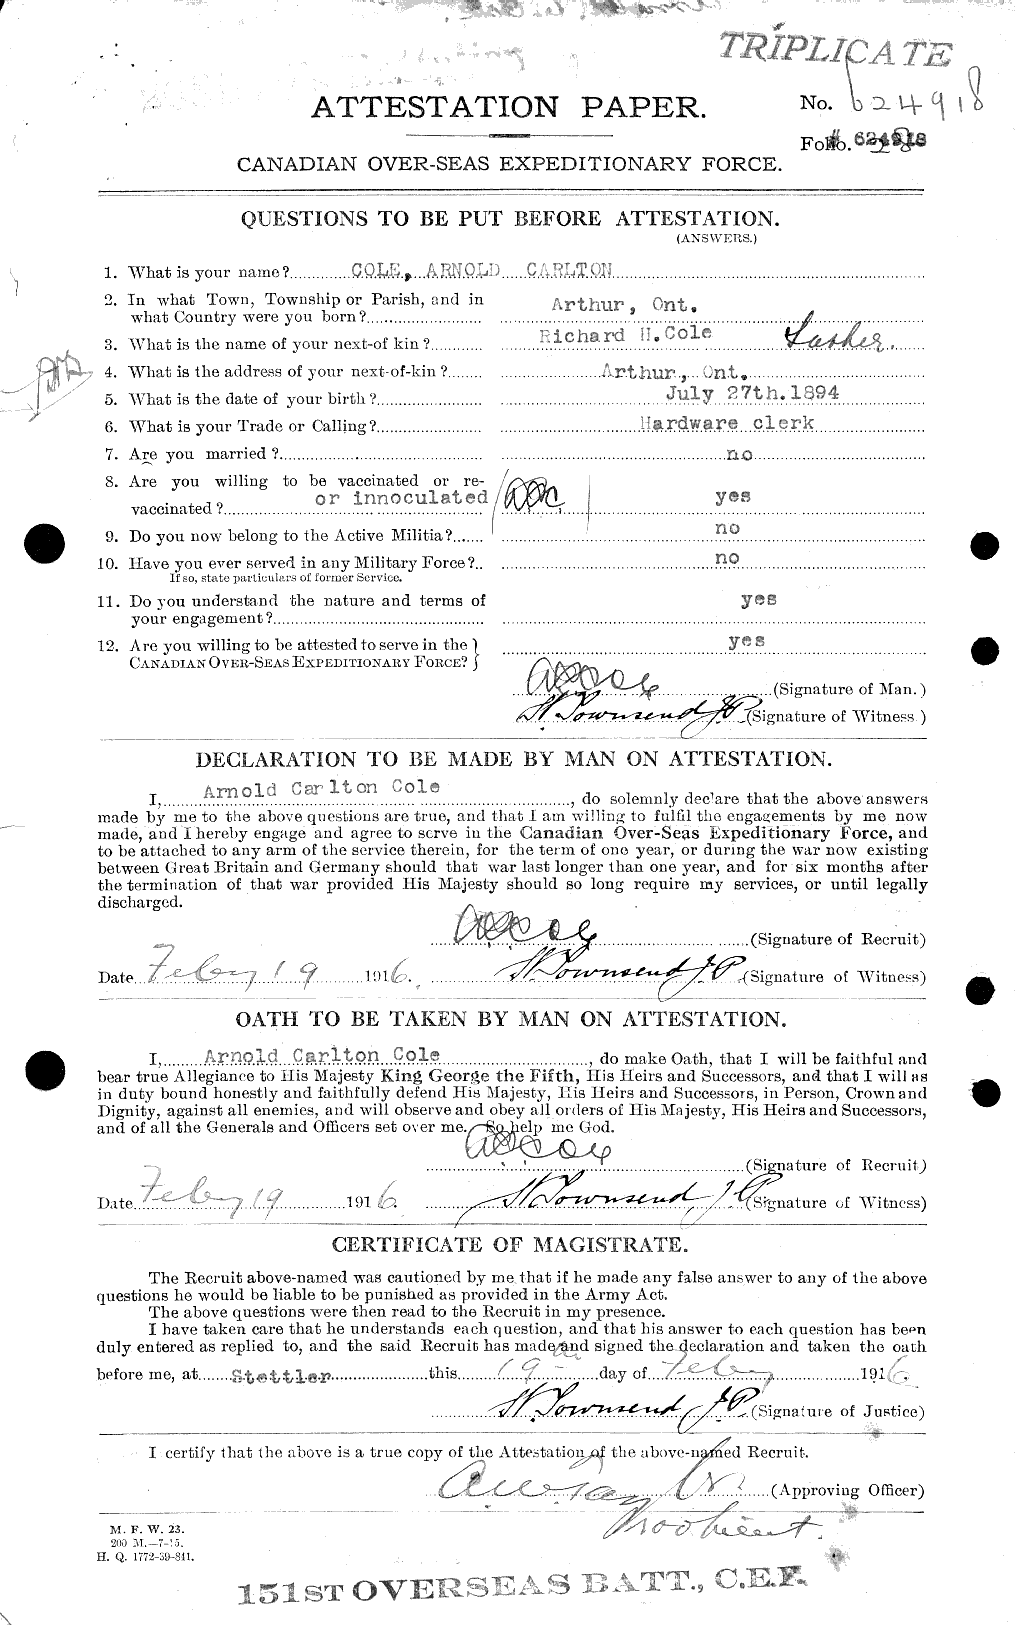 Dossiers du Personnel de la Première Guerre mondiale - CEC 027594a